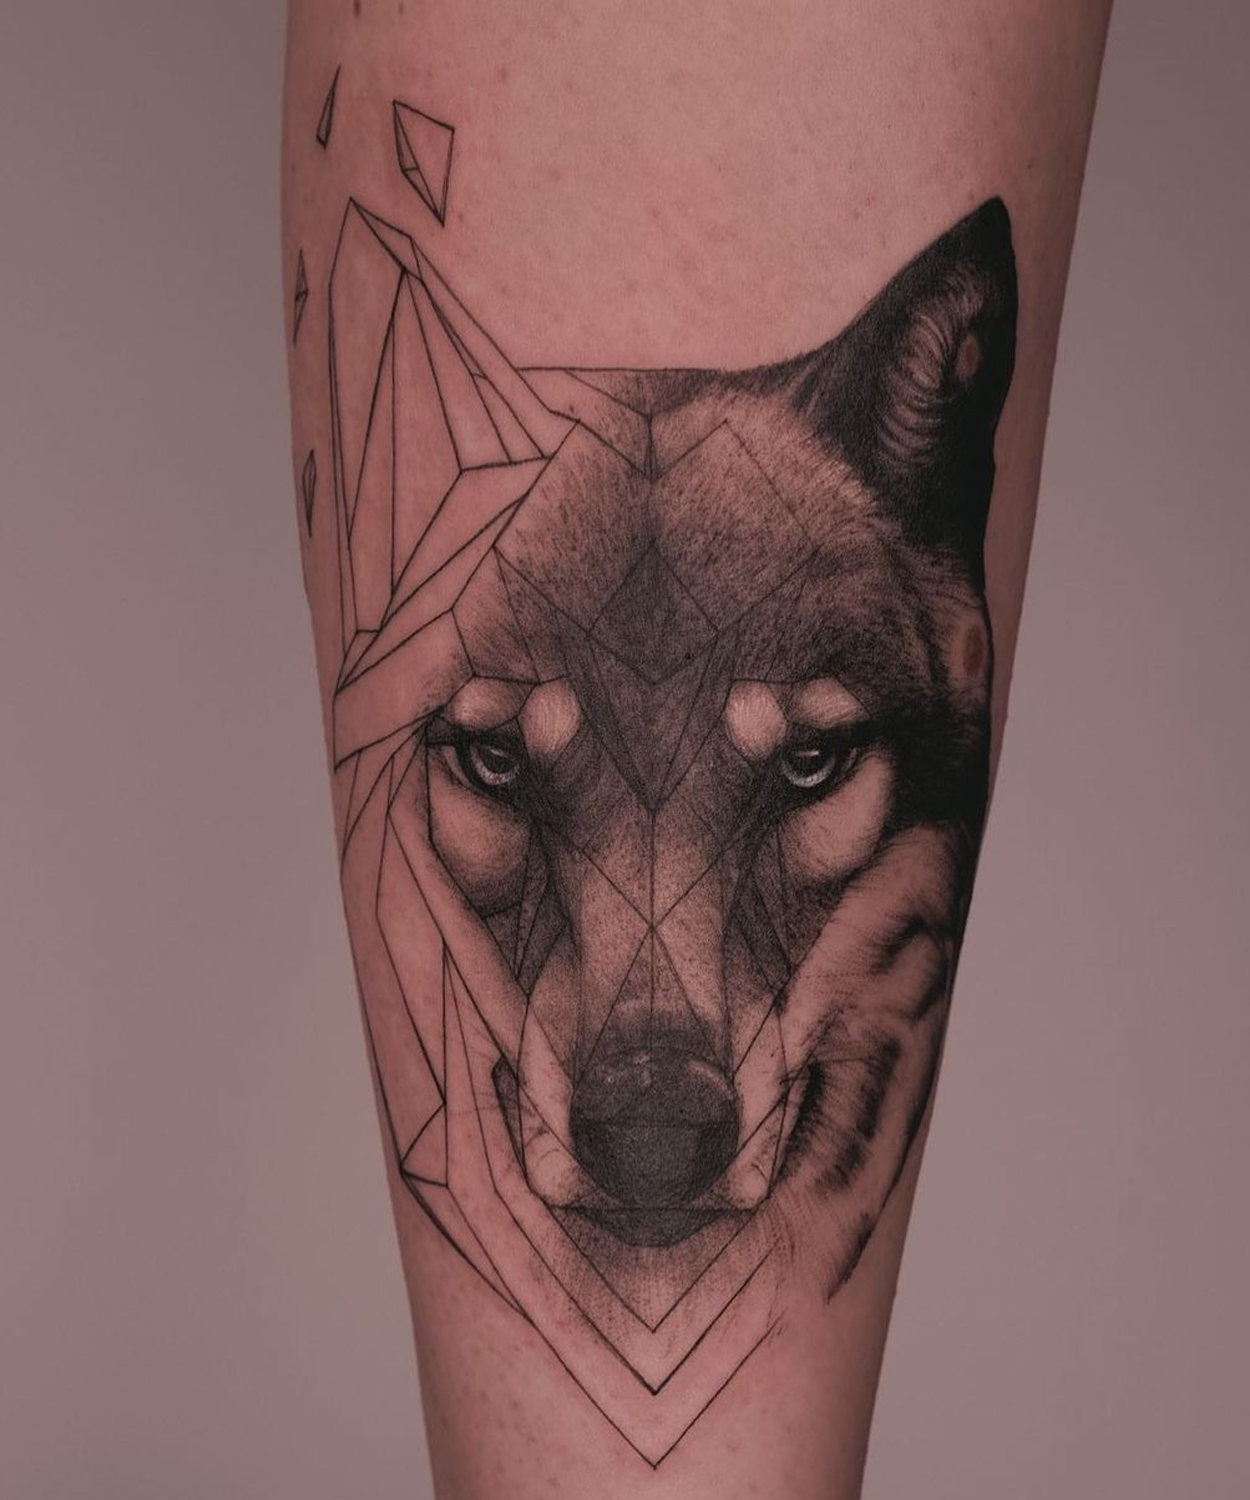 Tatuagem de lobo geométrica e realista